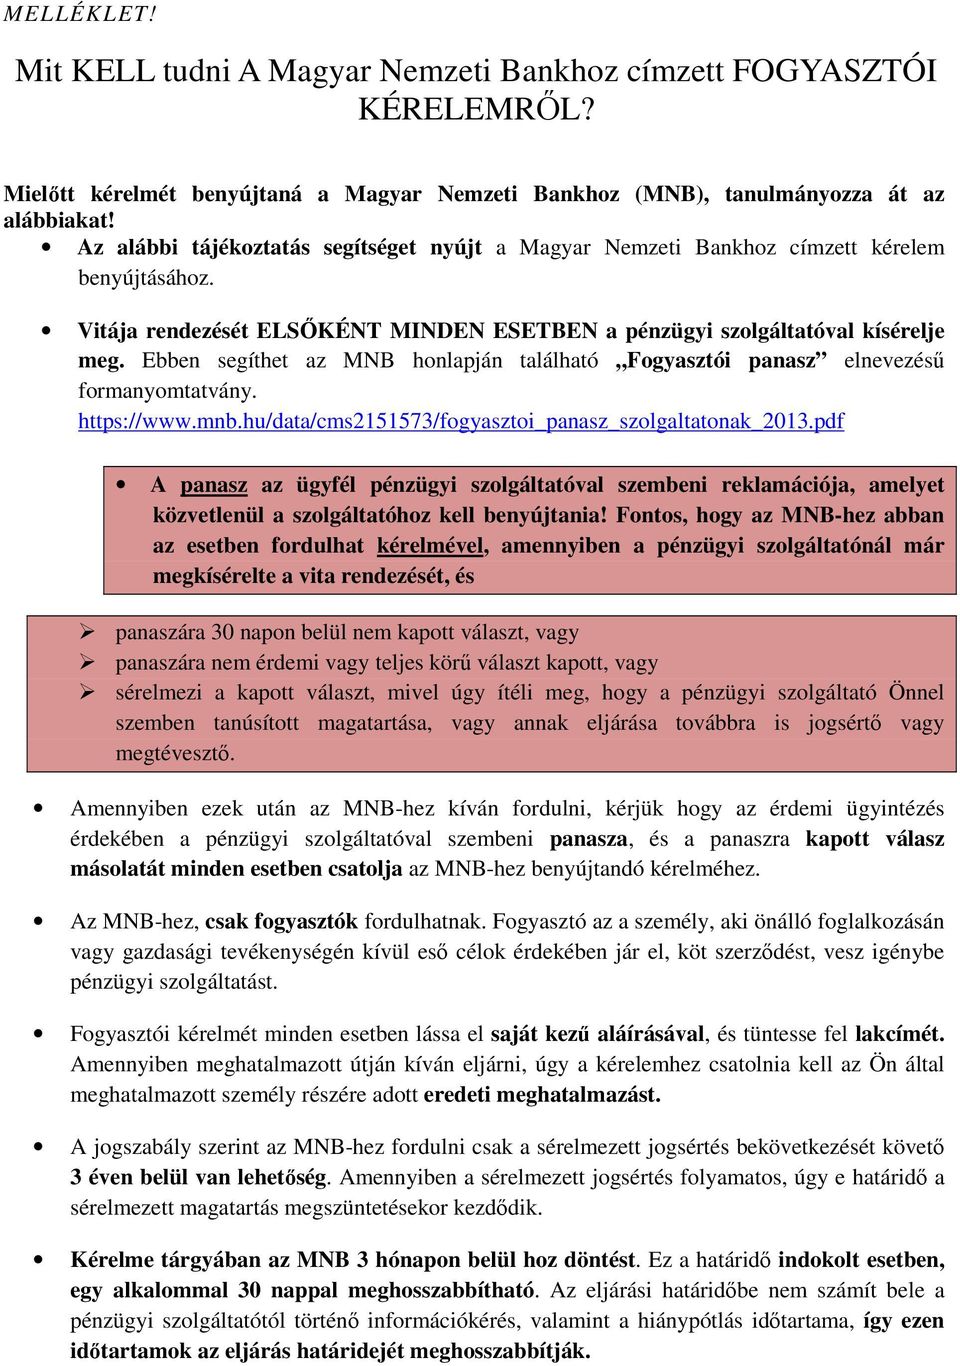 Ebben segíthet az MNB honlapján található Fogyasztói panasz elnevezésű formanyomtatvány. https://www.mnb.hu/data/cms2151573/fogyasztoi_panasz_szolgaltatonak_2013.